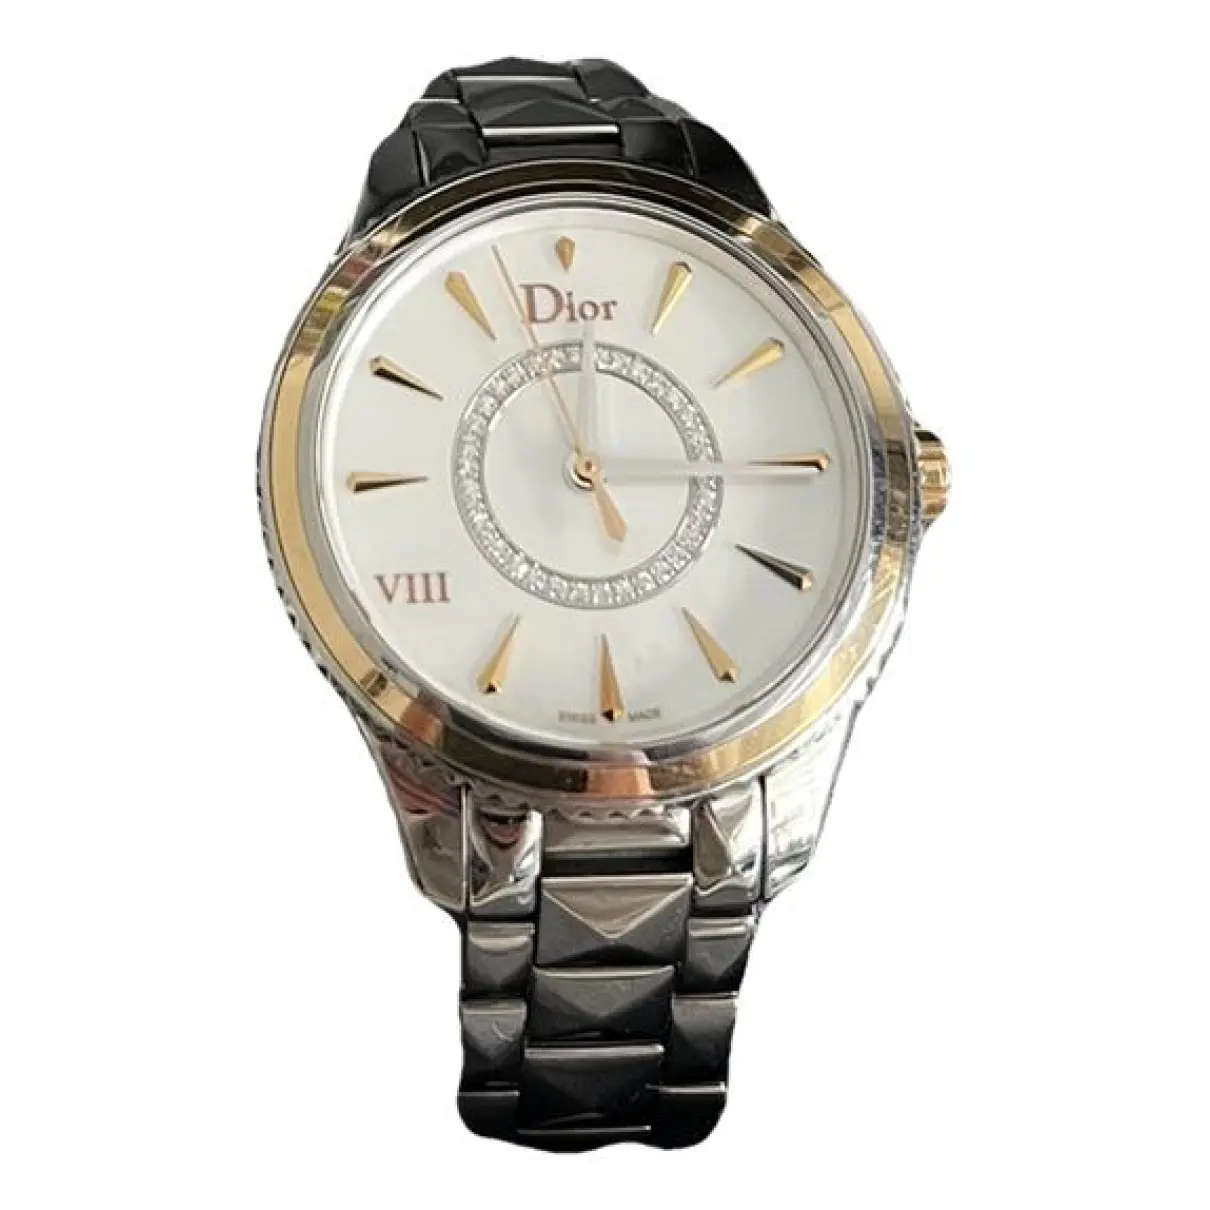 Dior VIII watch